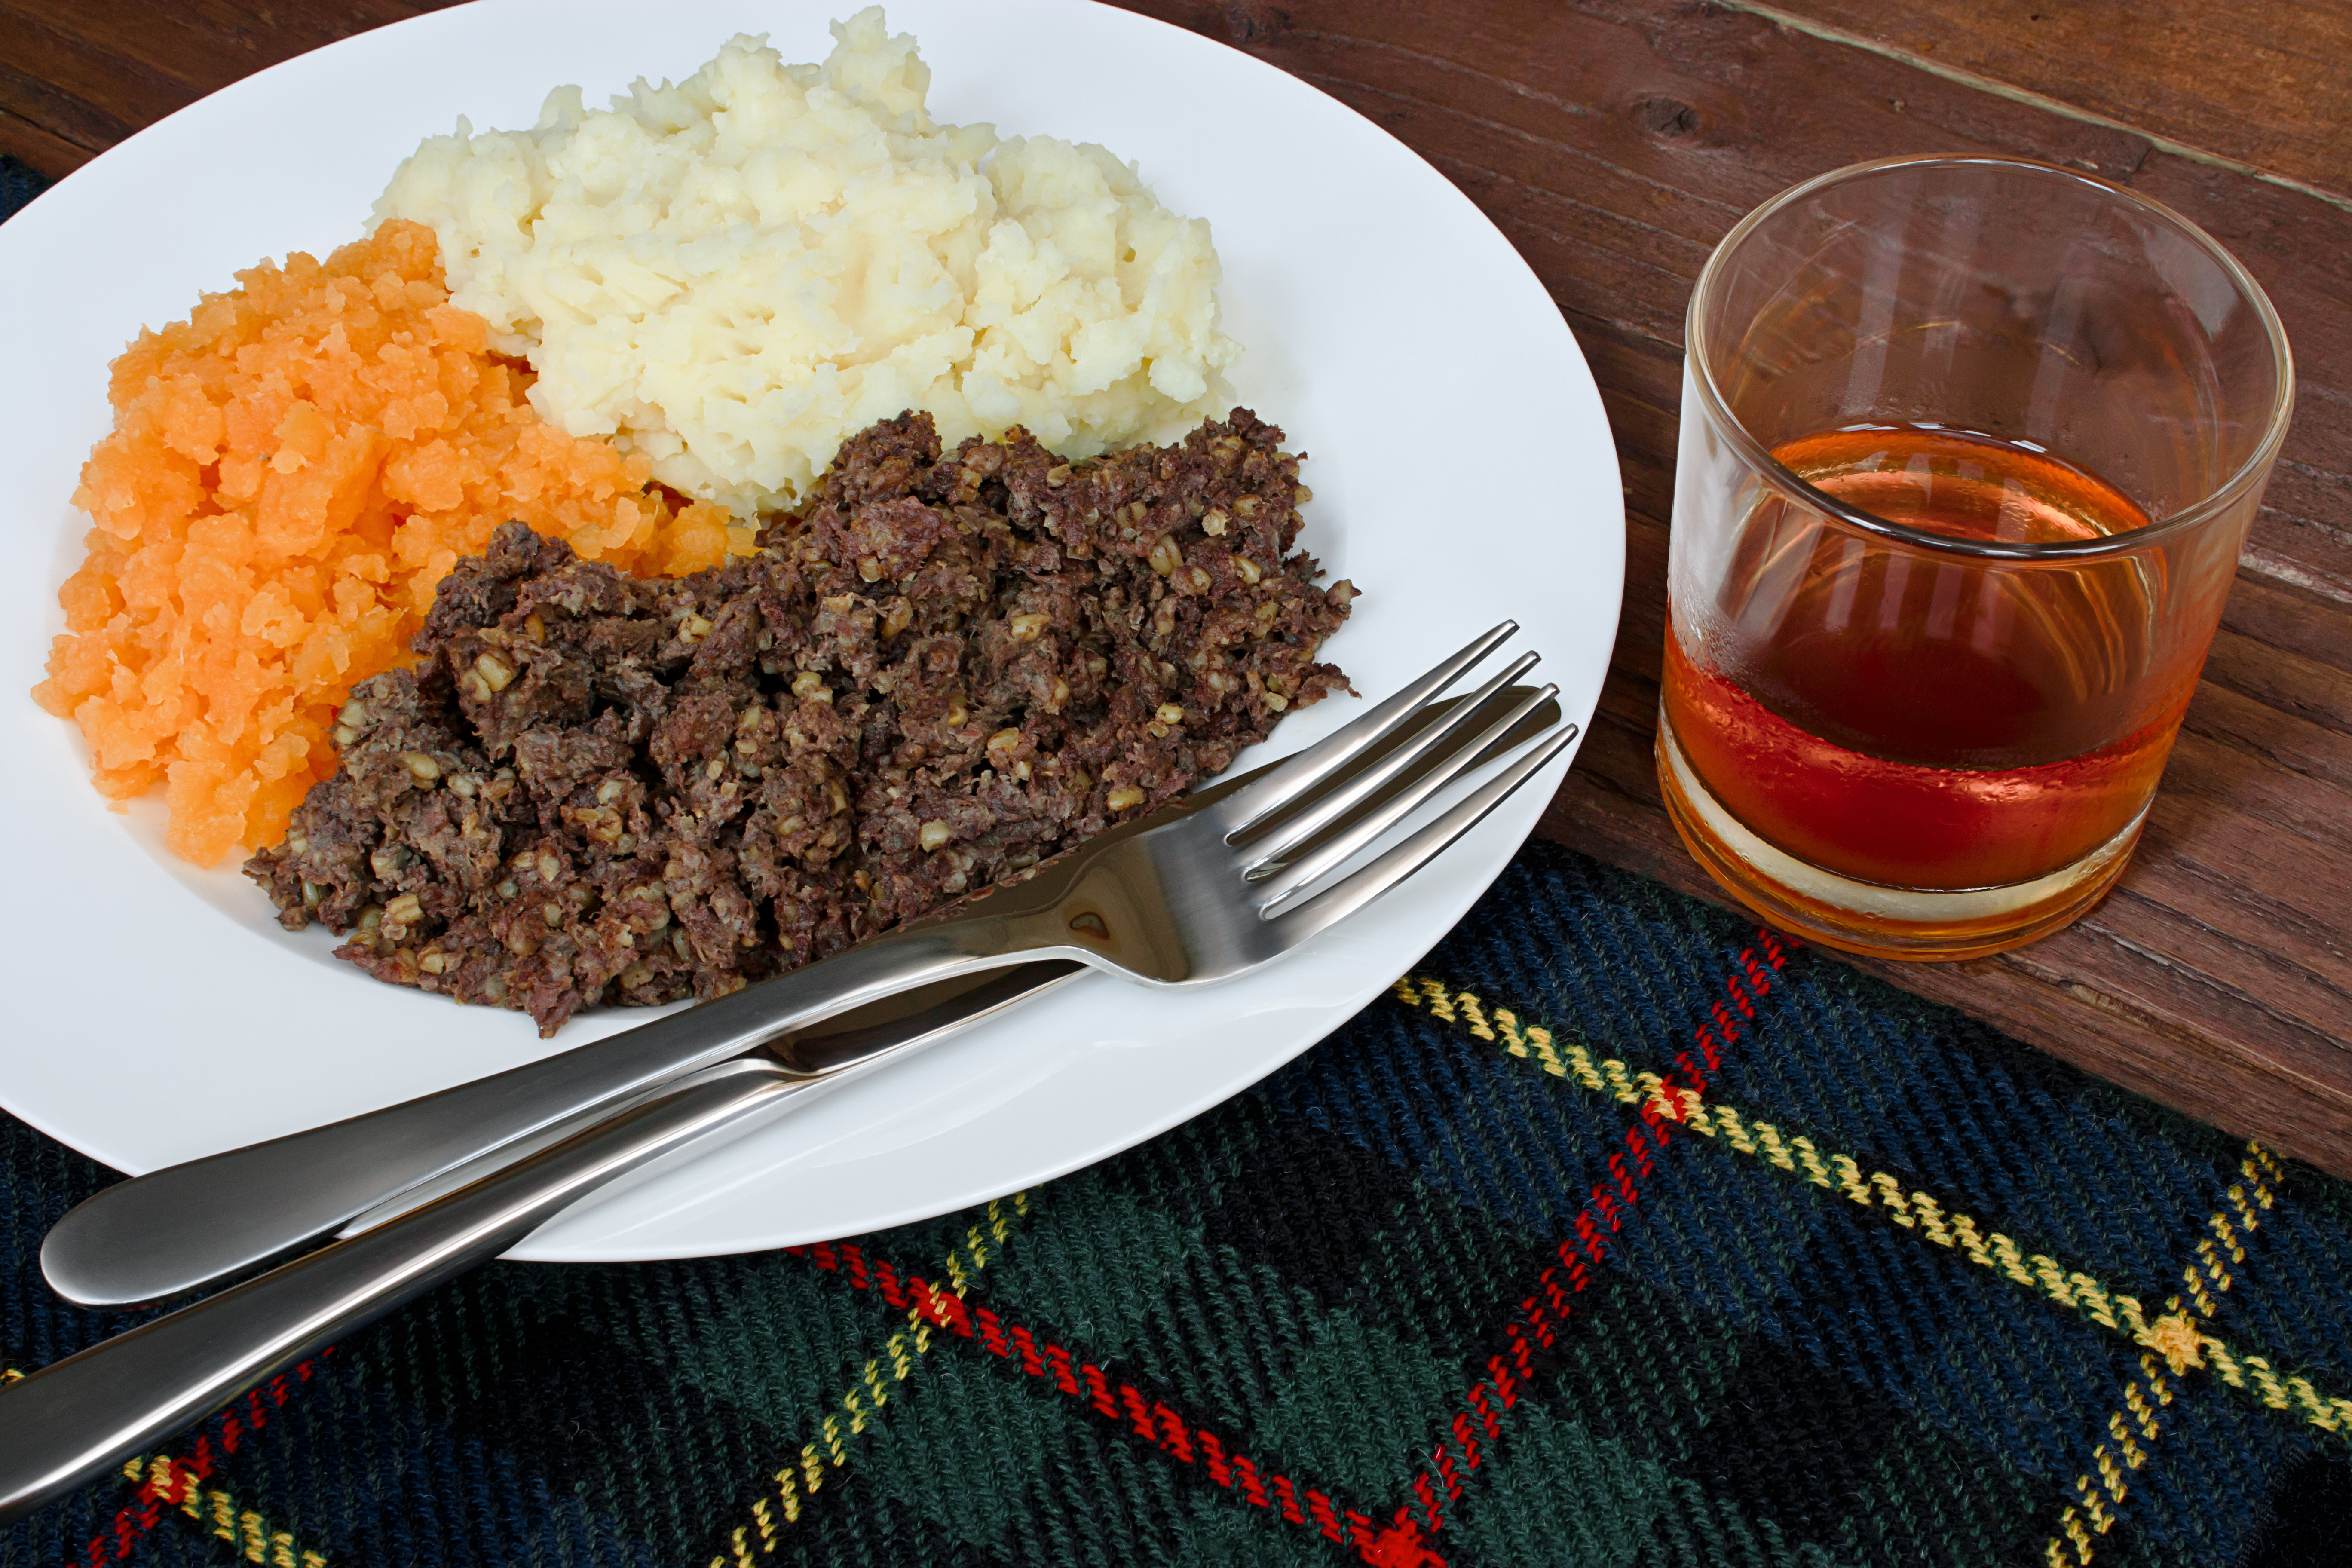 Un mets composé de haggis et d’une purée de pommes de terre et de navet accompagné d’un verre de scotch présenté sur une nappe de table inspirée d’un tartan écossais.